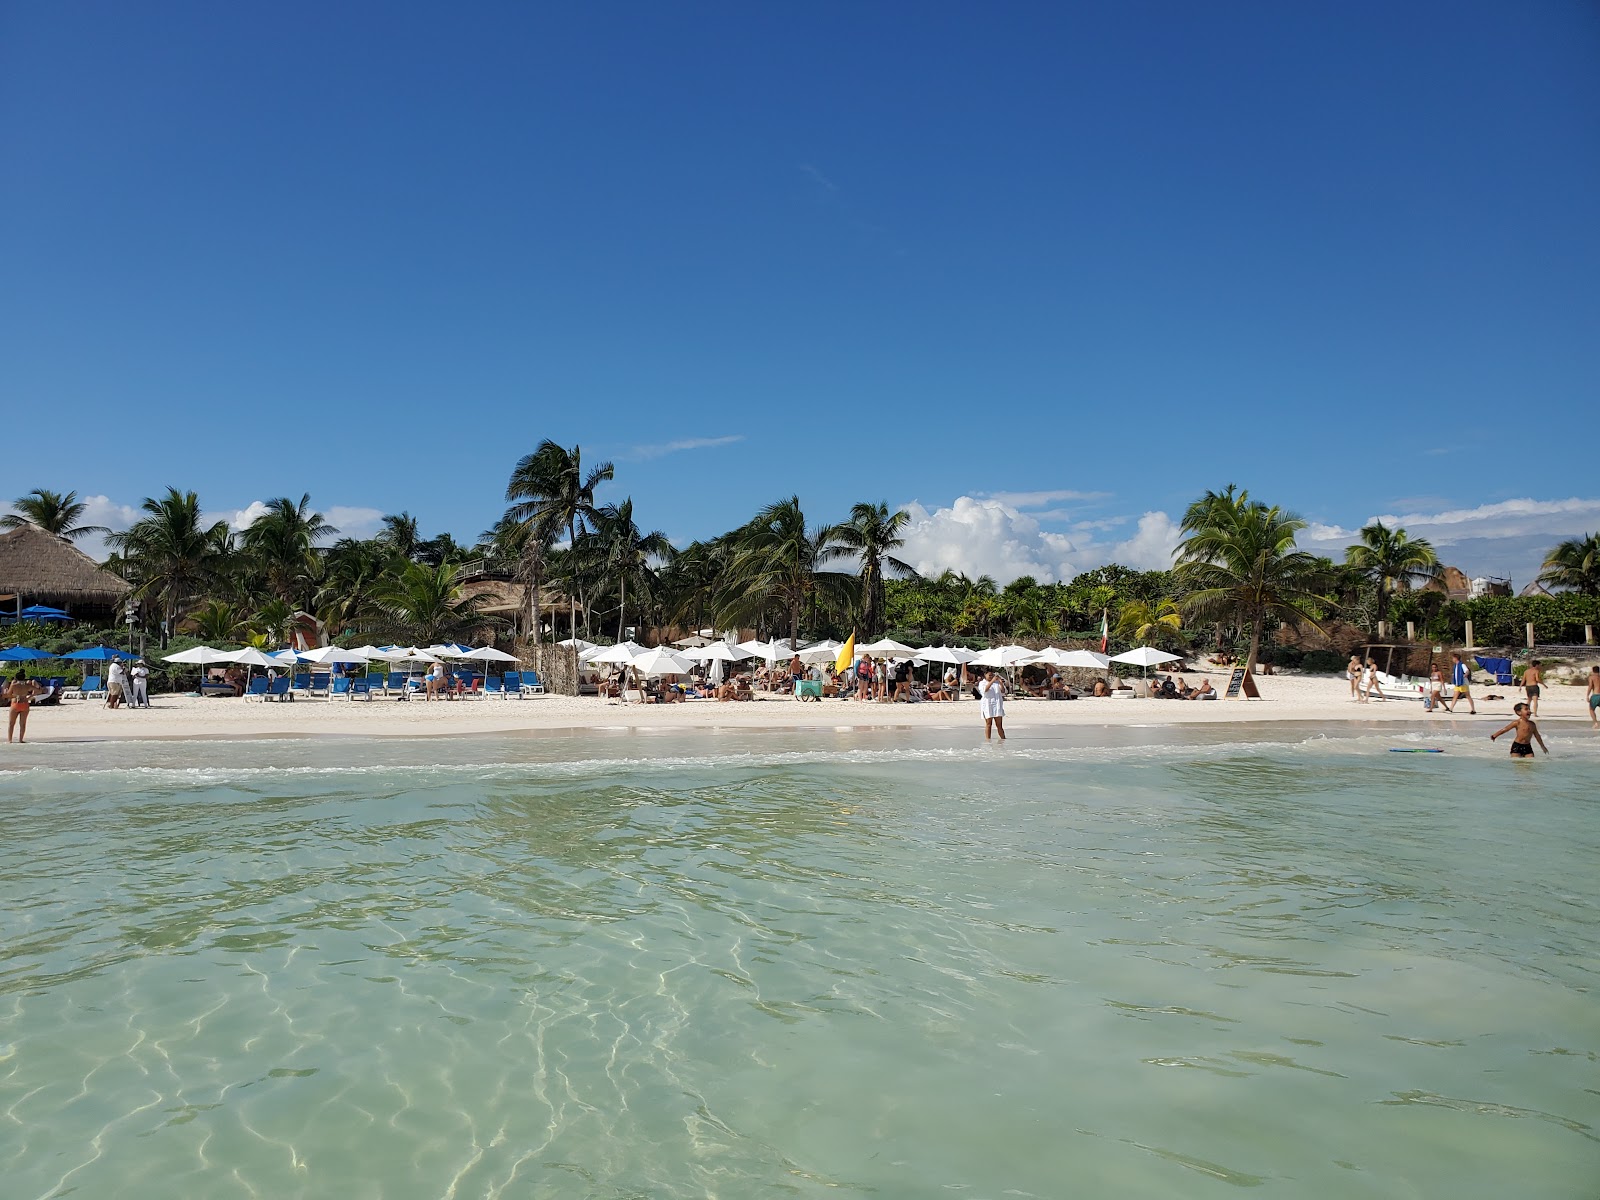 Playa Tulum'in fotoğrafı - rahatlamayı sevenler arasında popüler bir yer